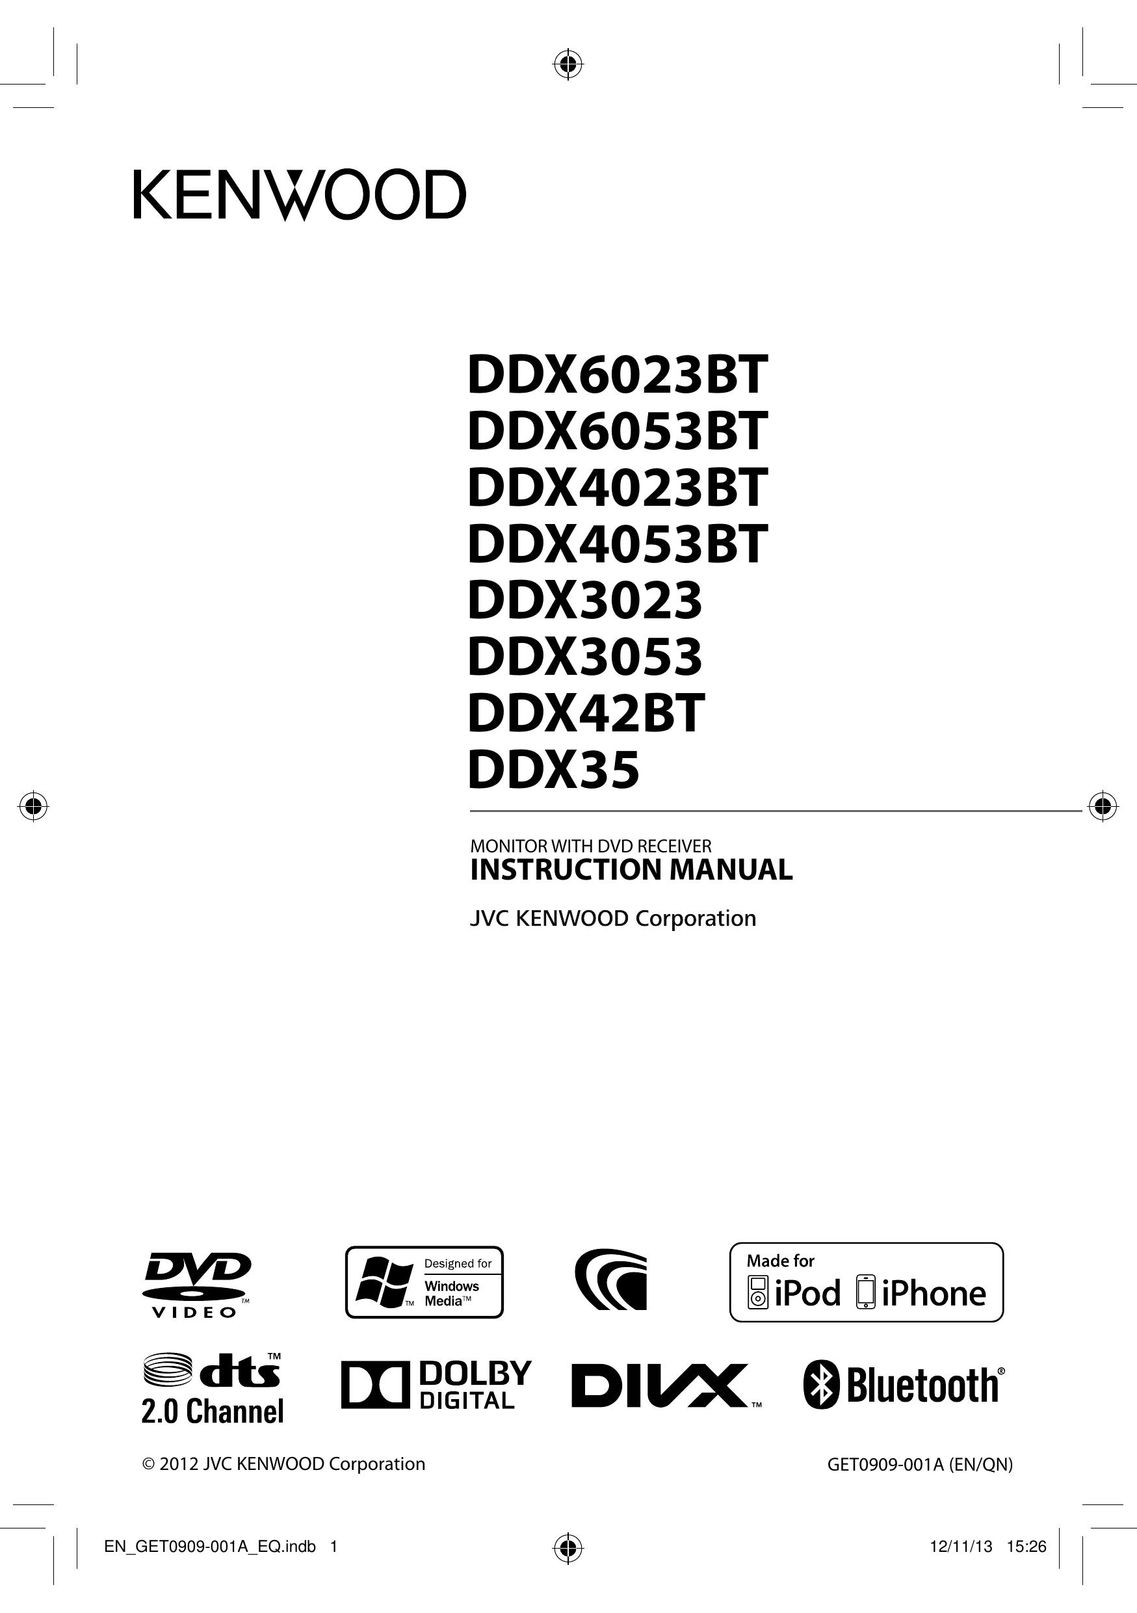 Kenwood DDX4053BT Car Video System User Manual